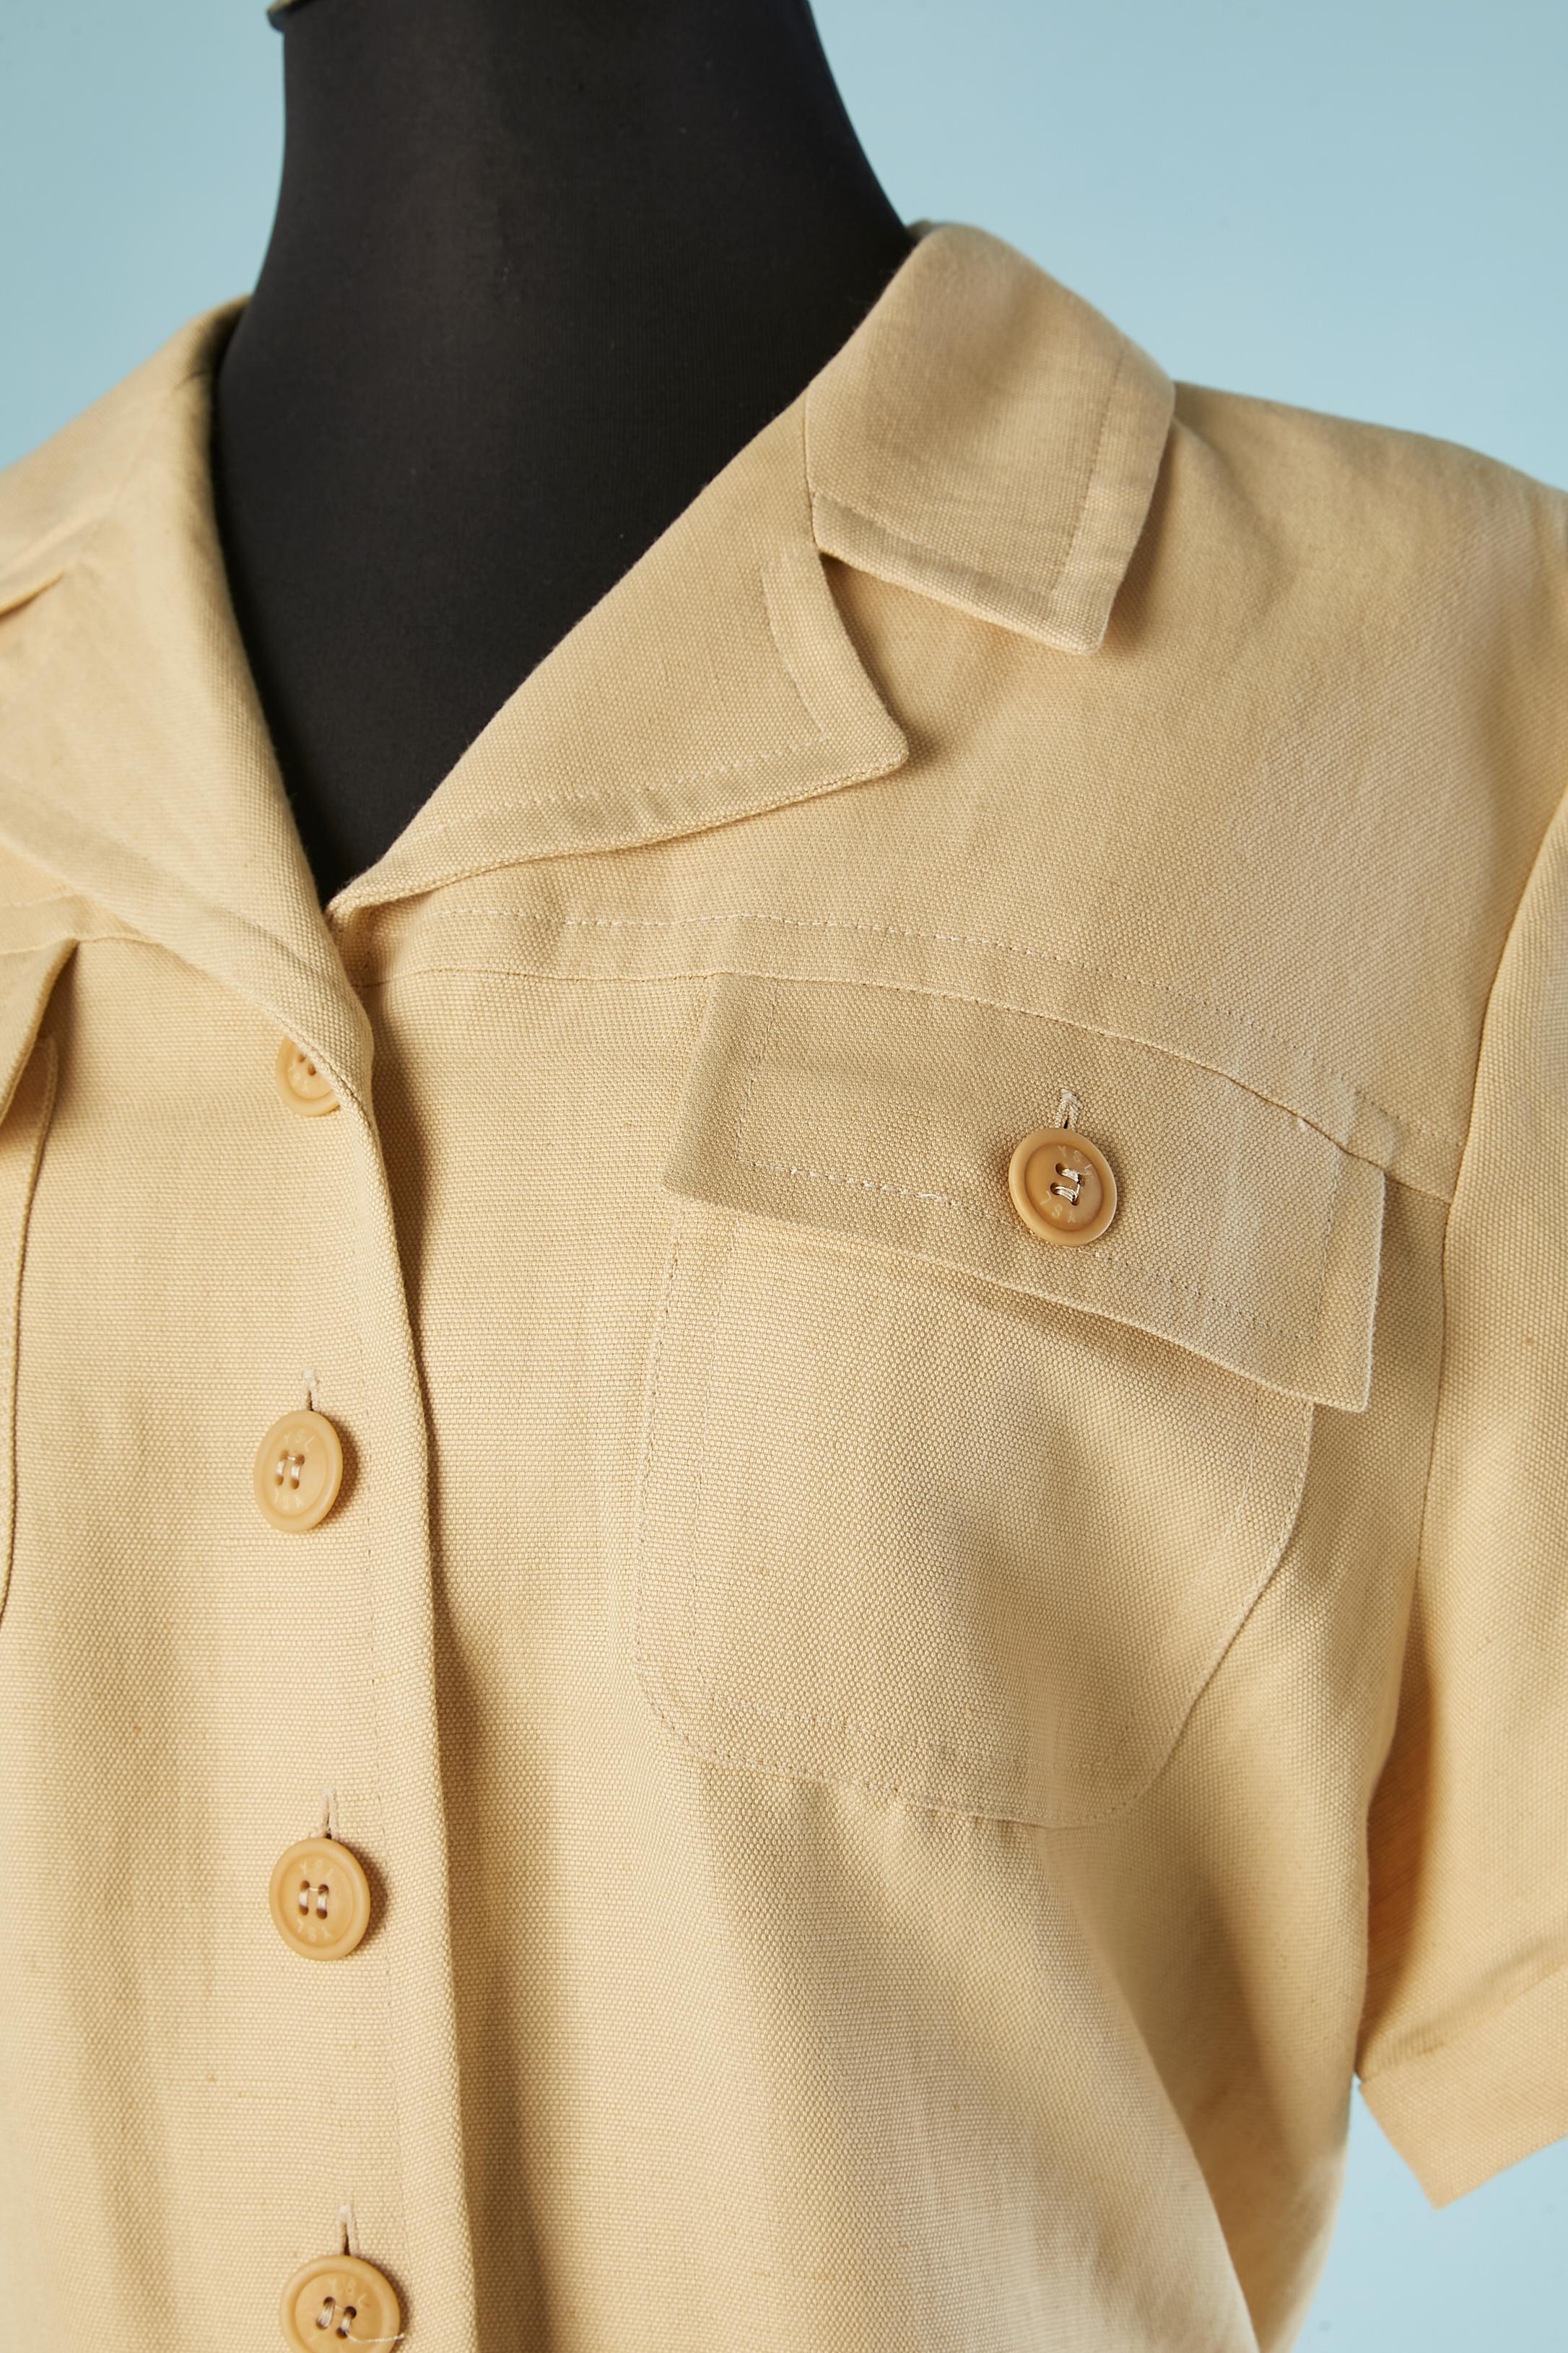 Robe de safari en lin et coton beige avec poches et ceinture. Boutons de la marque, pas de doublure. Une boucle de ceinture.
TAILLE L 